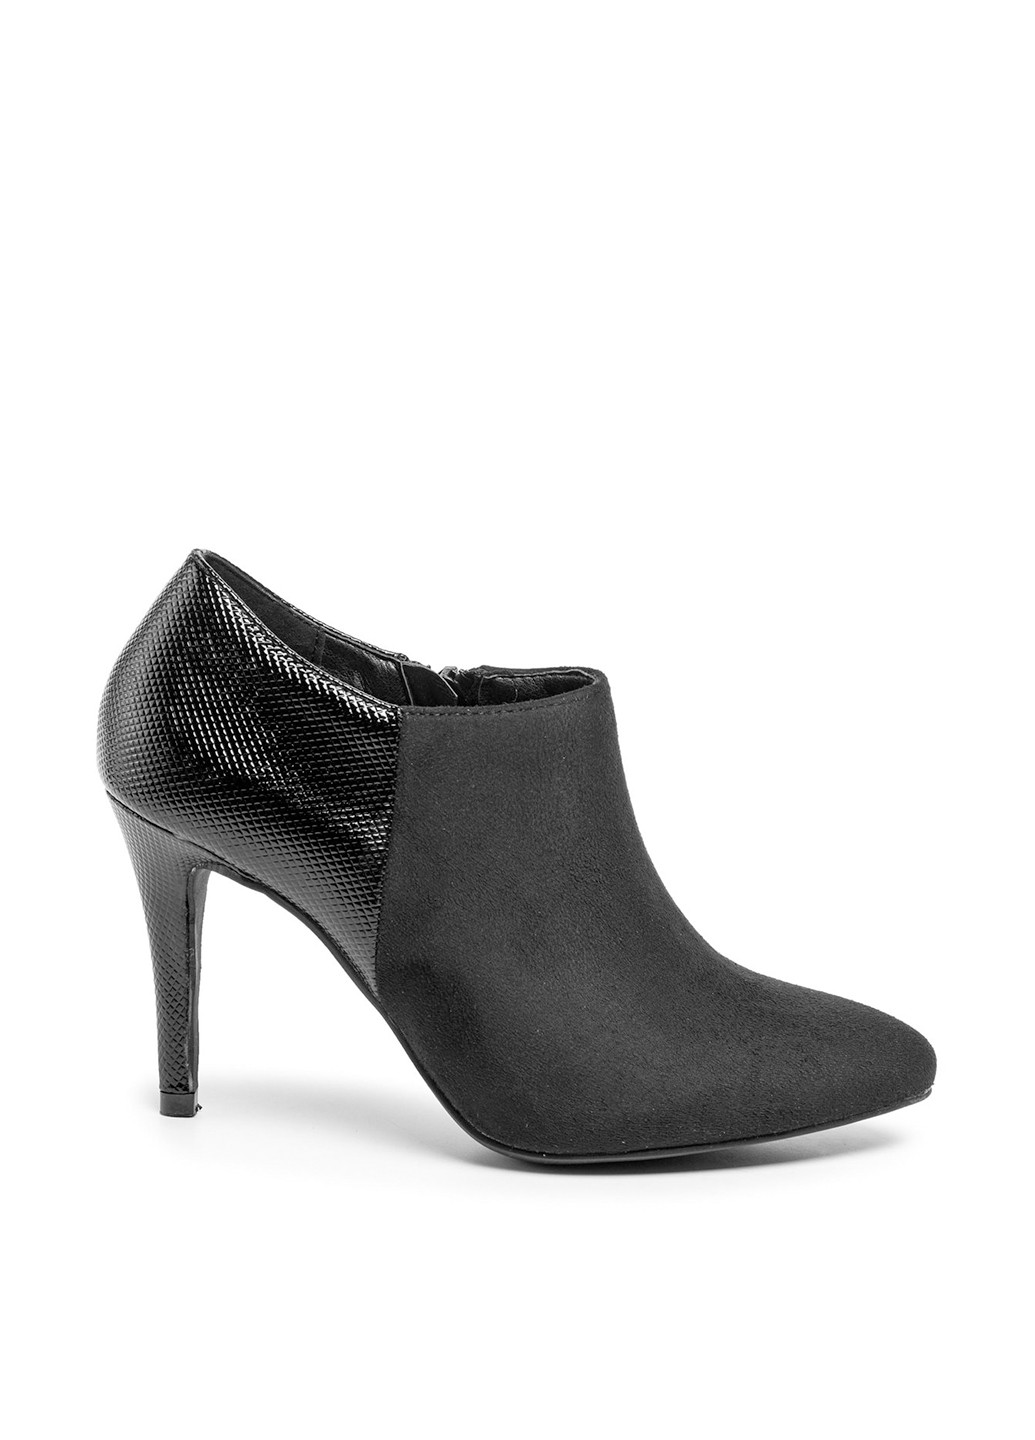 Черные демисезонная туфлі на шпильке ls4770-11a Jenny Fairy